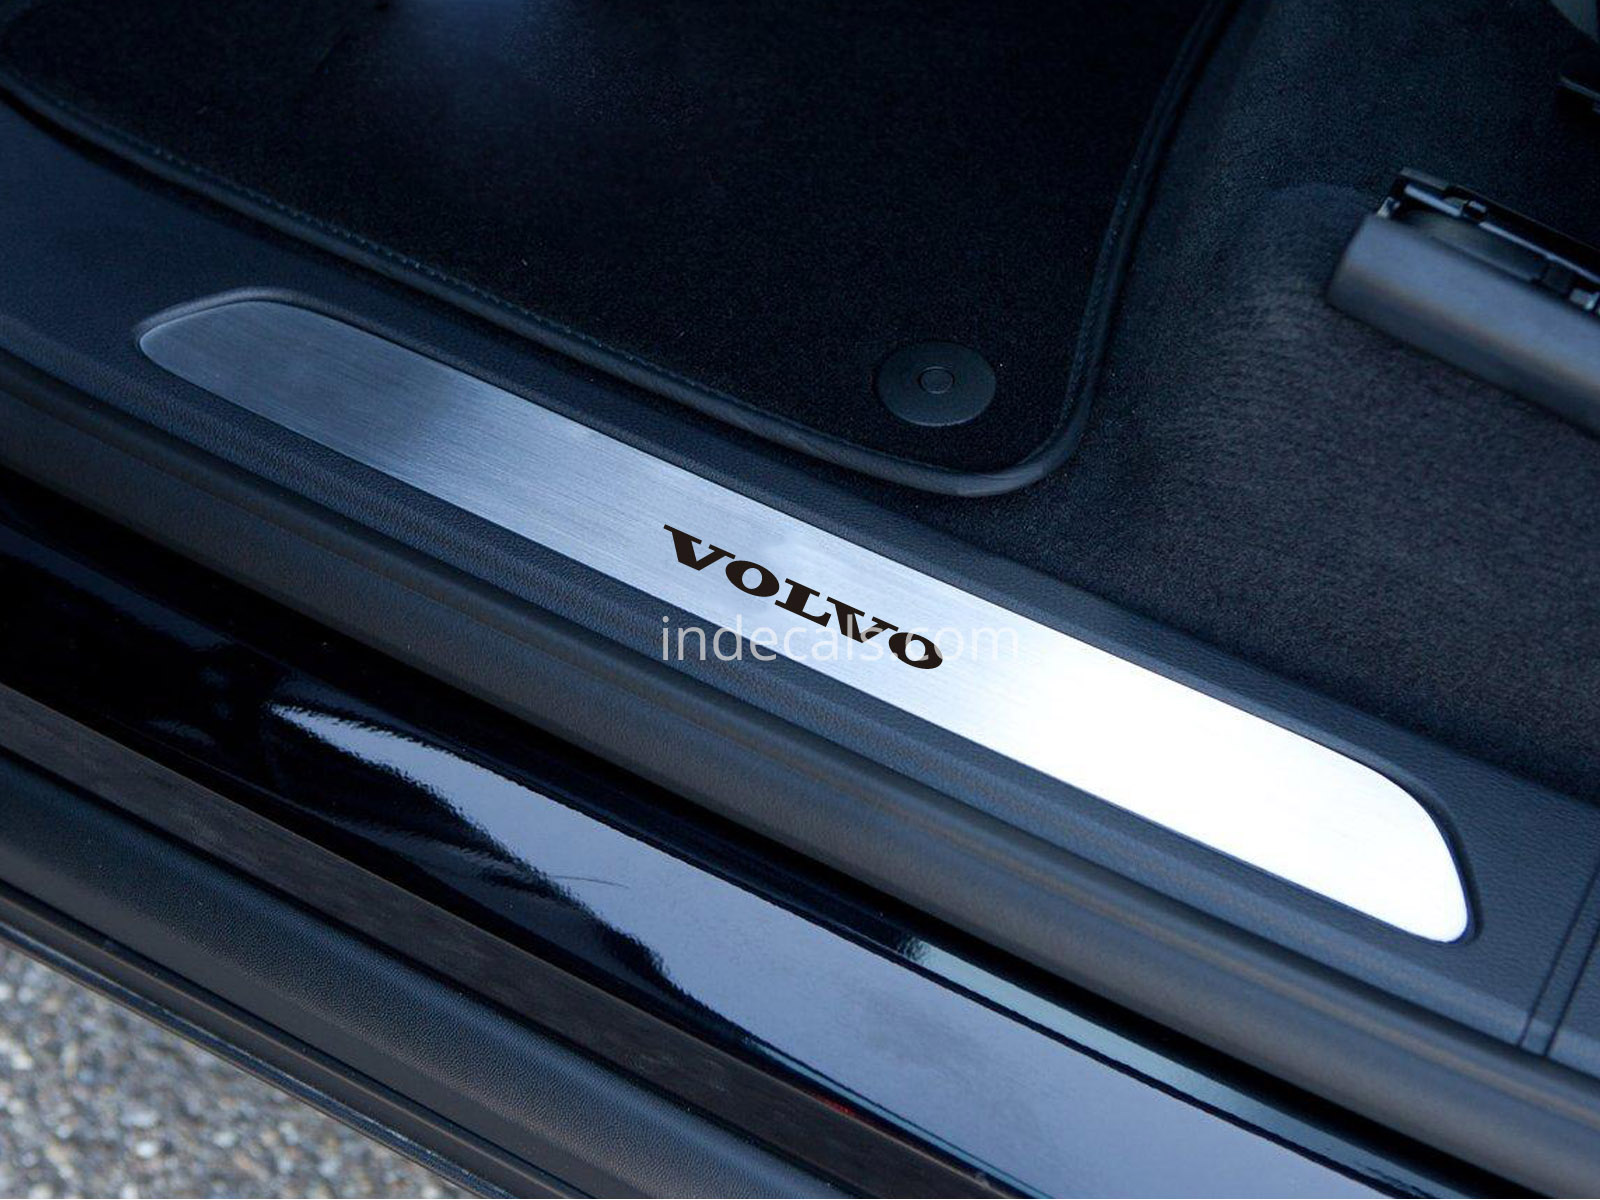 6 x Volvo Stickers for Door Sills - Black